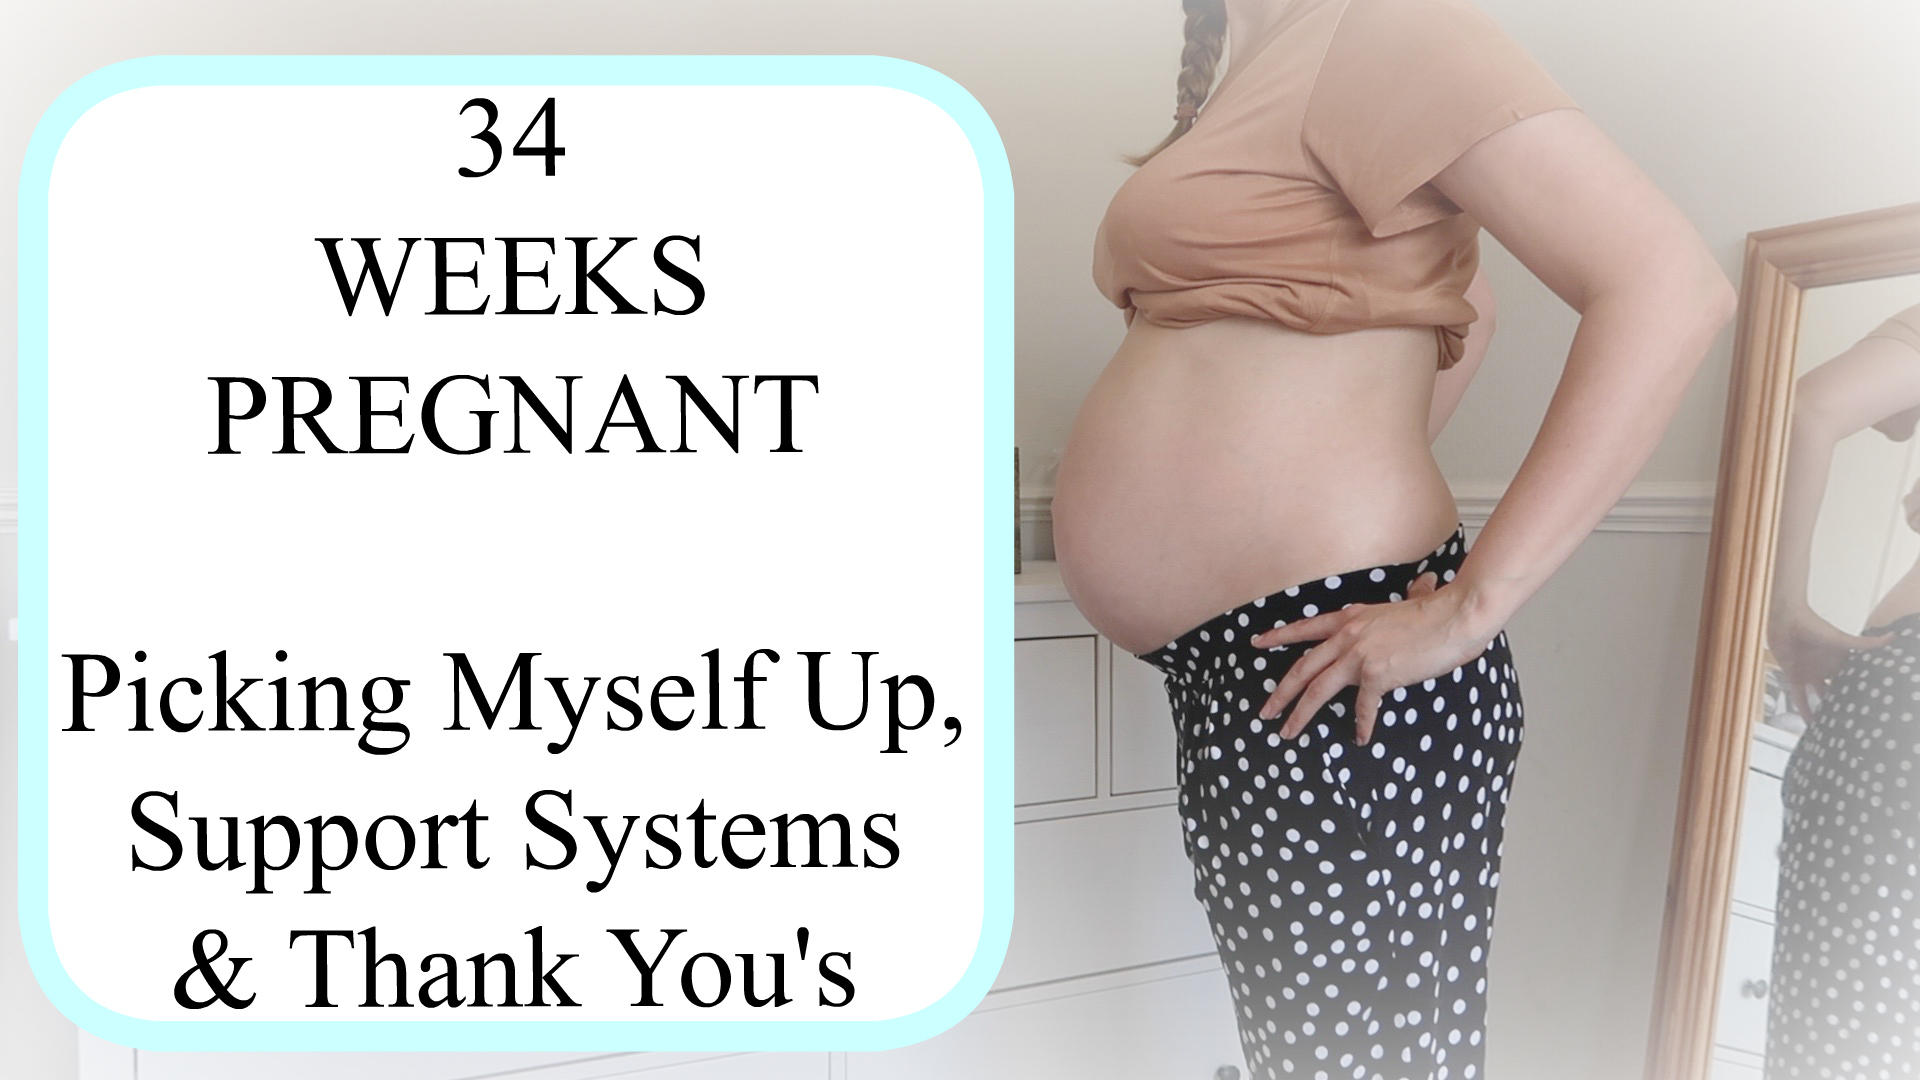 34 week pregnancy update